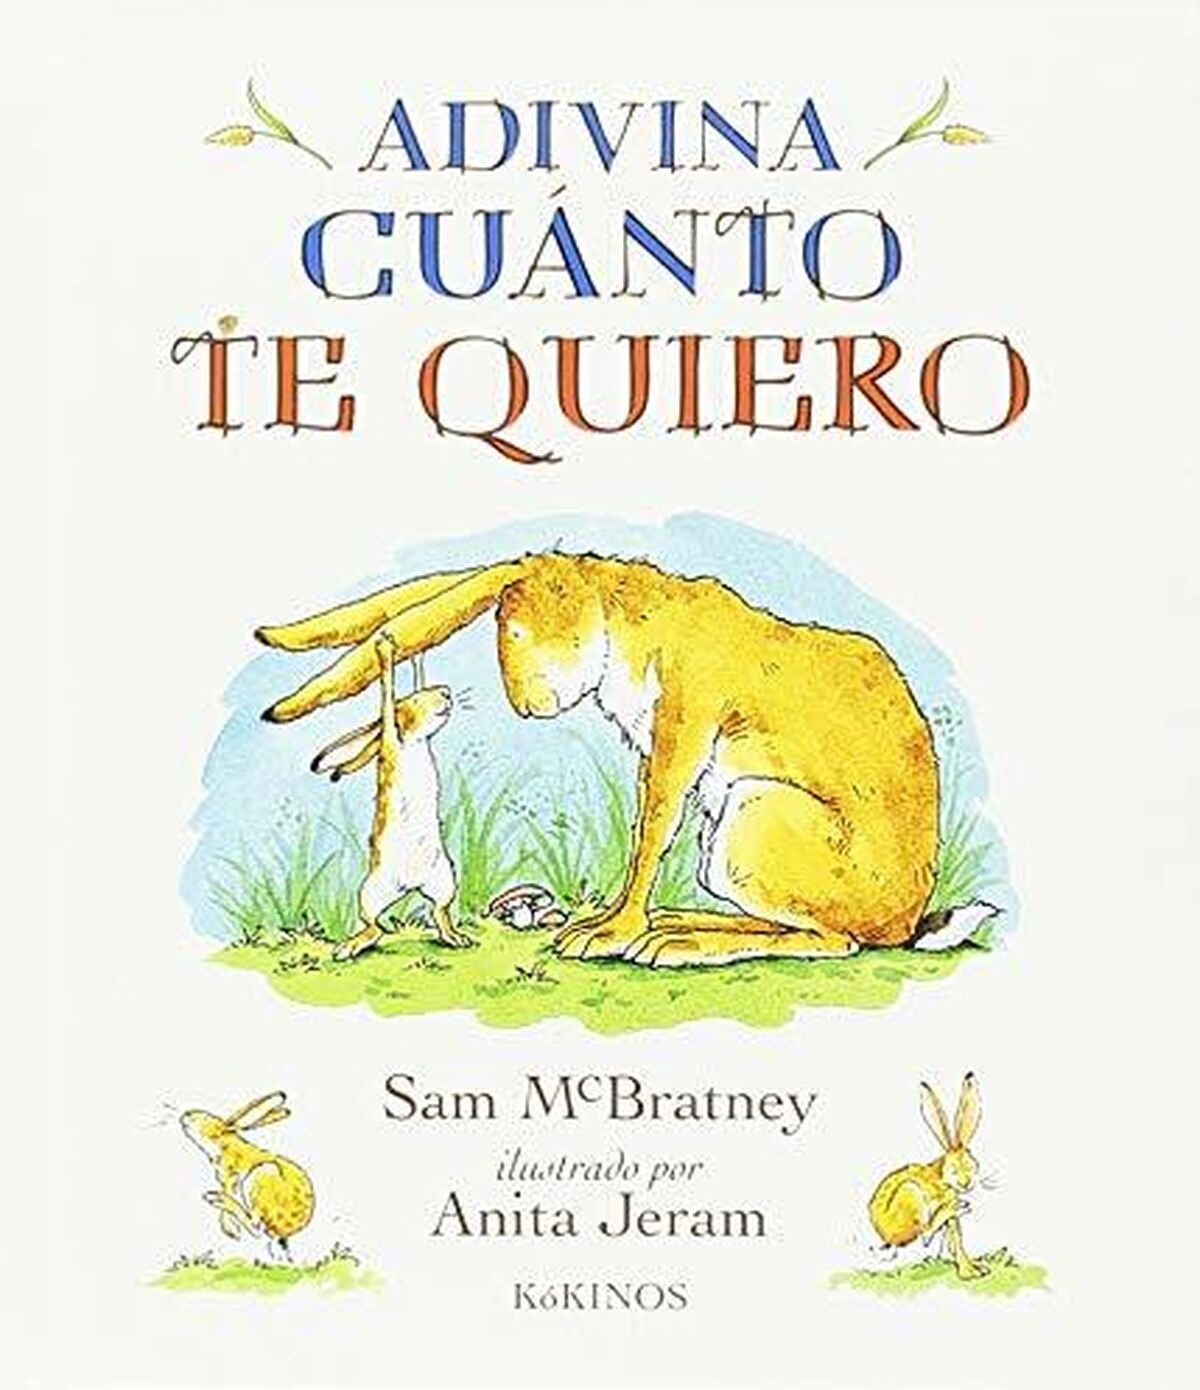 Libros para niños de 3 a 5 años: lecturas recomendadas